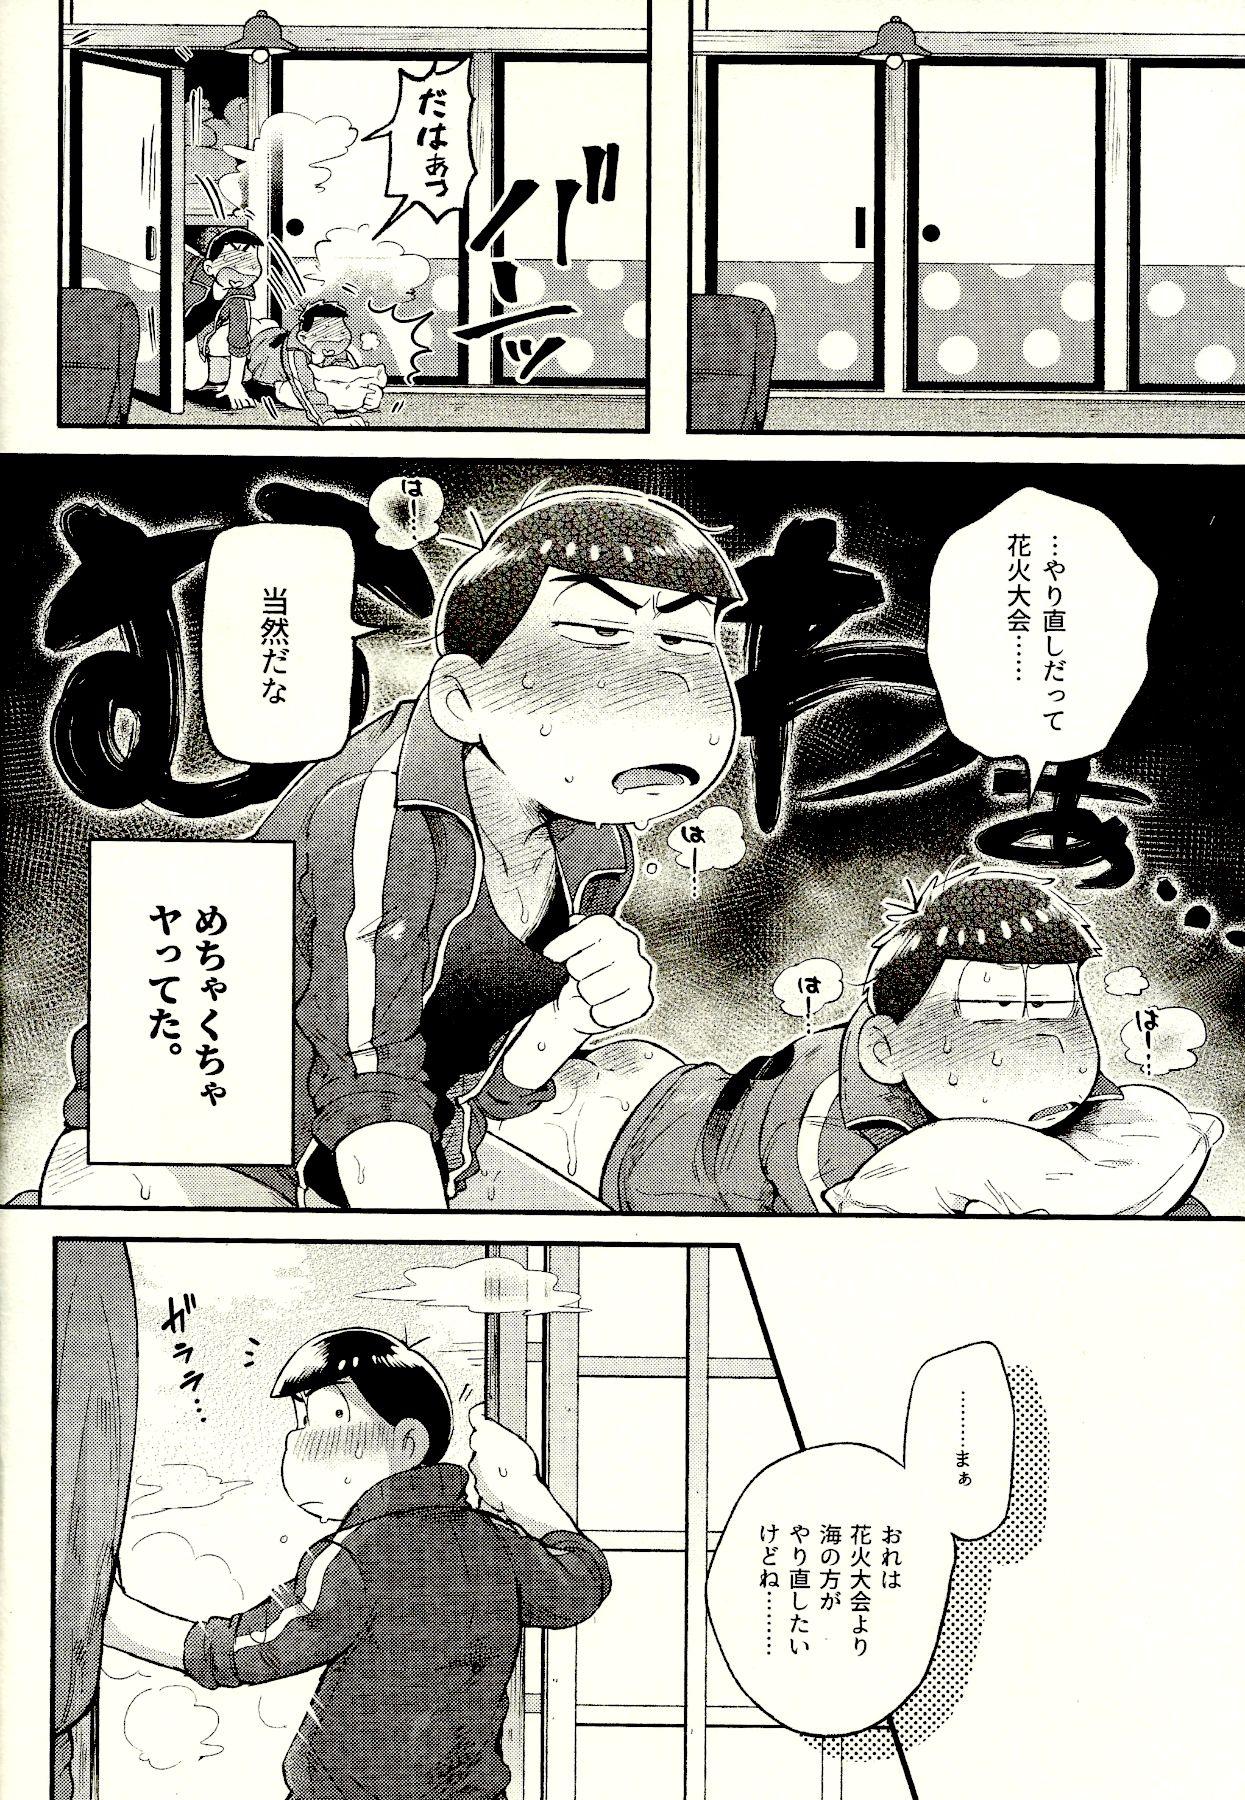 Pussy Orgasm Season in the Summer - Osomatsu-san Boob - Page 6